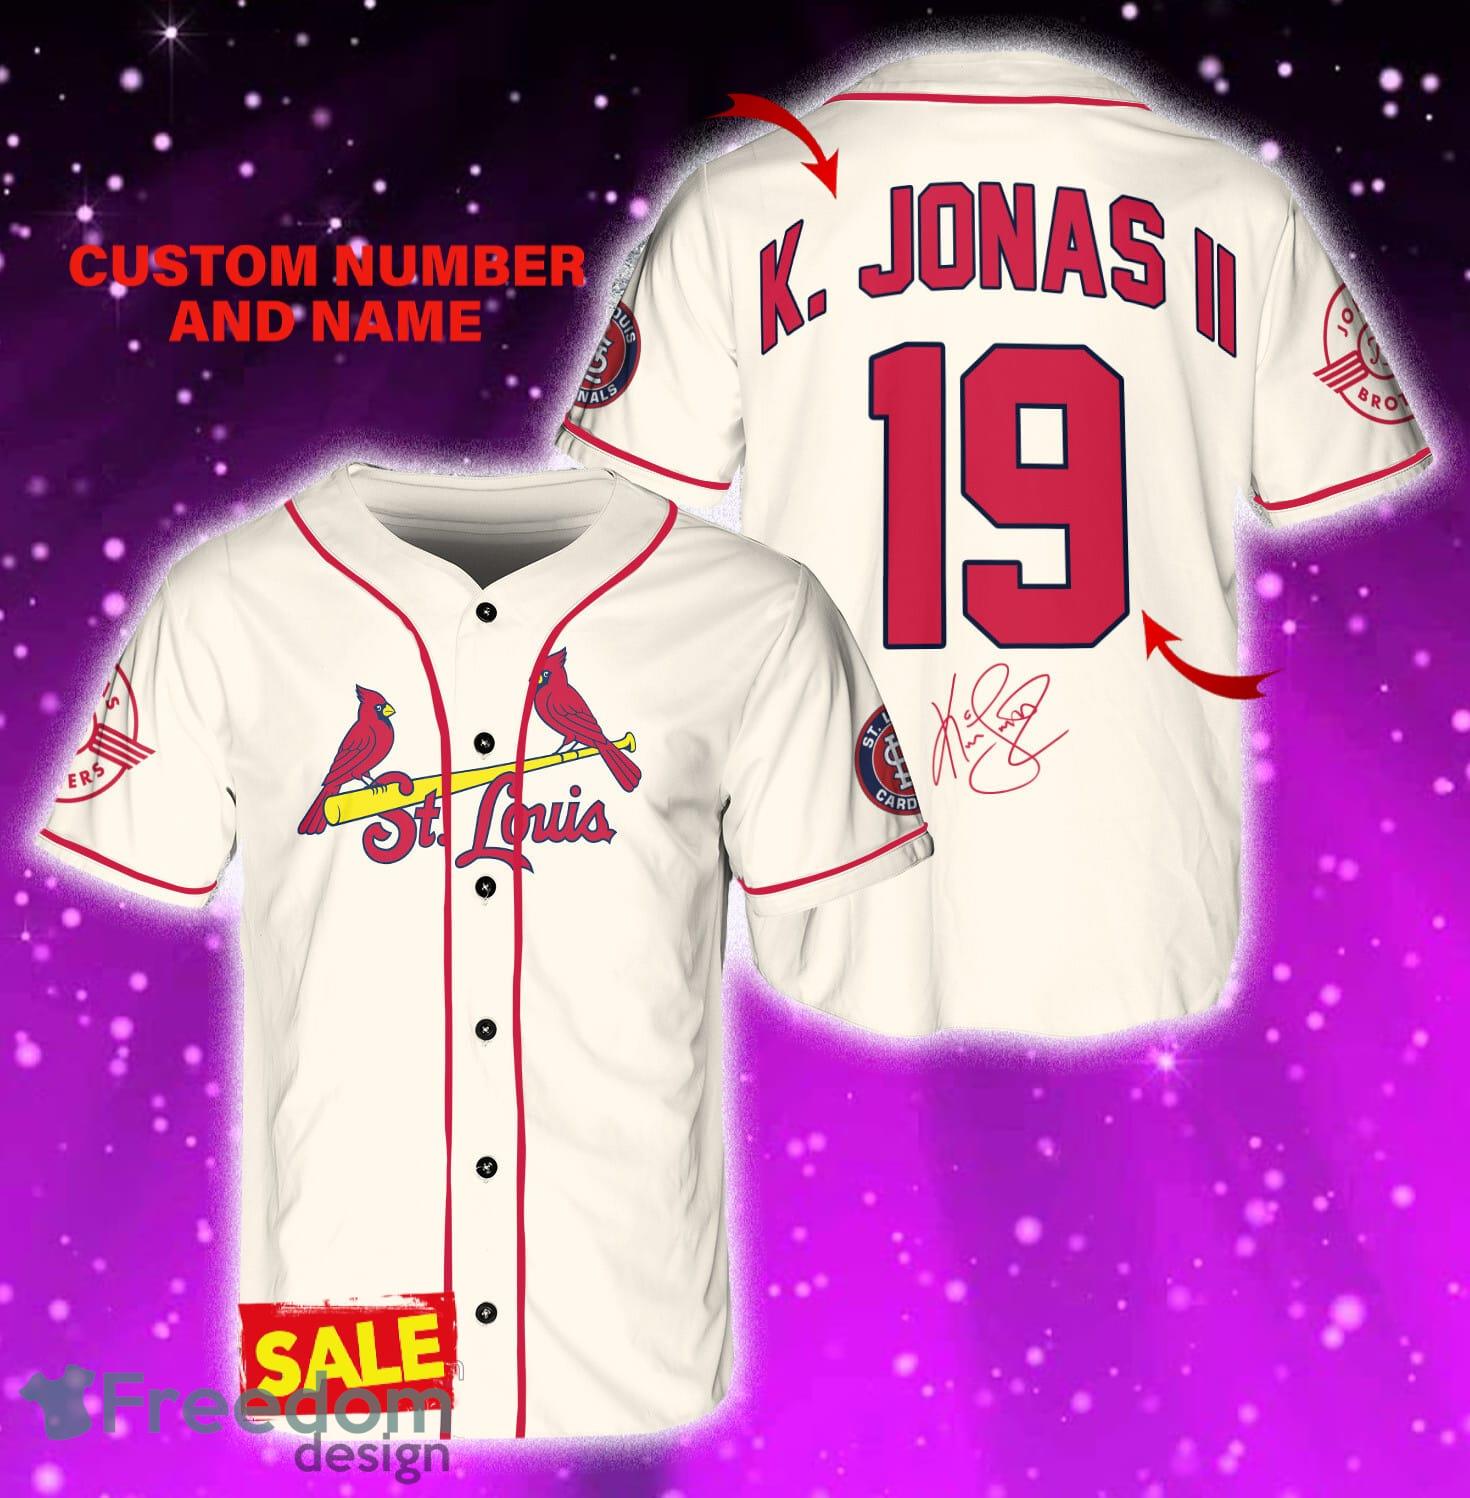 St.Louis Cardinals Cream Baseball Jersey by K. Jonas - Scesy